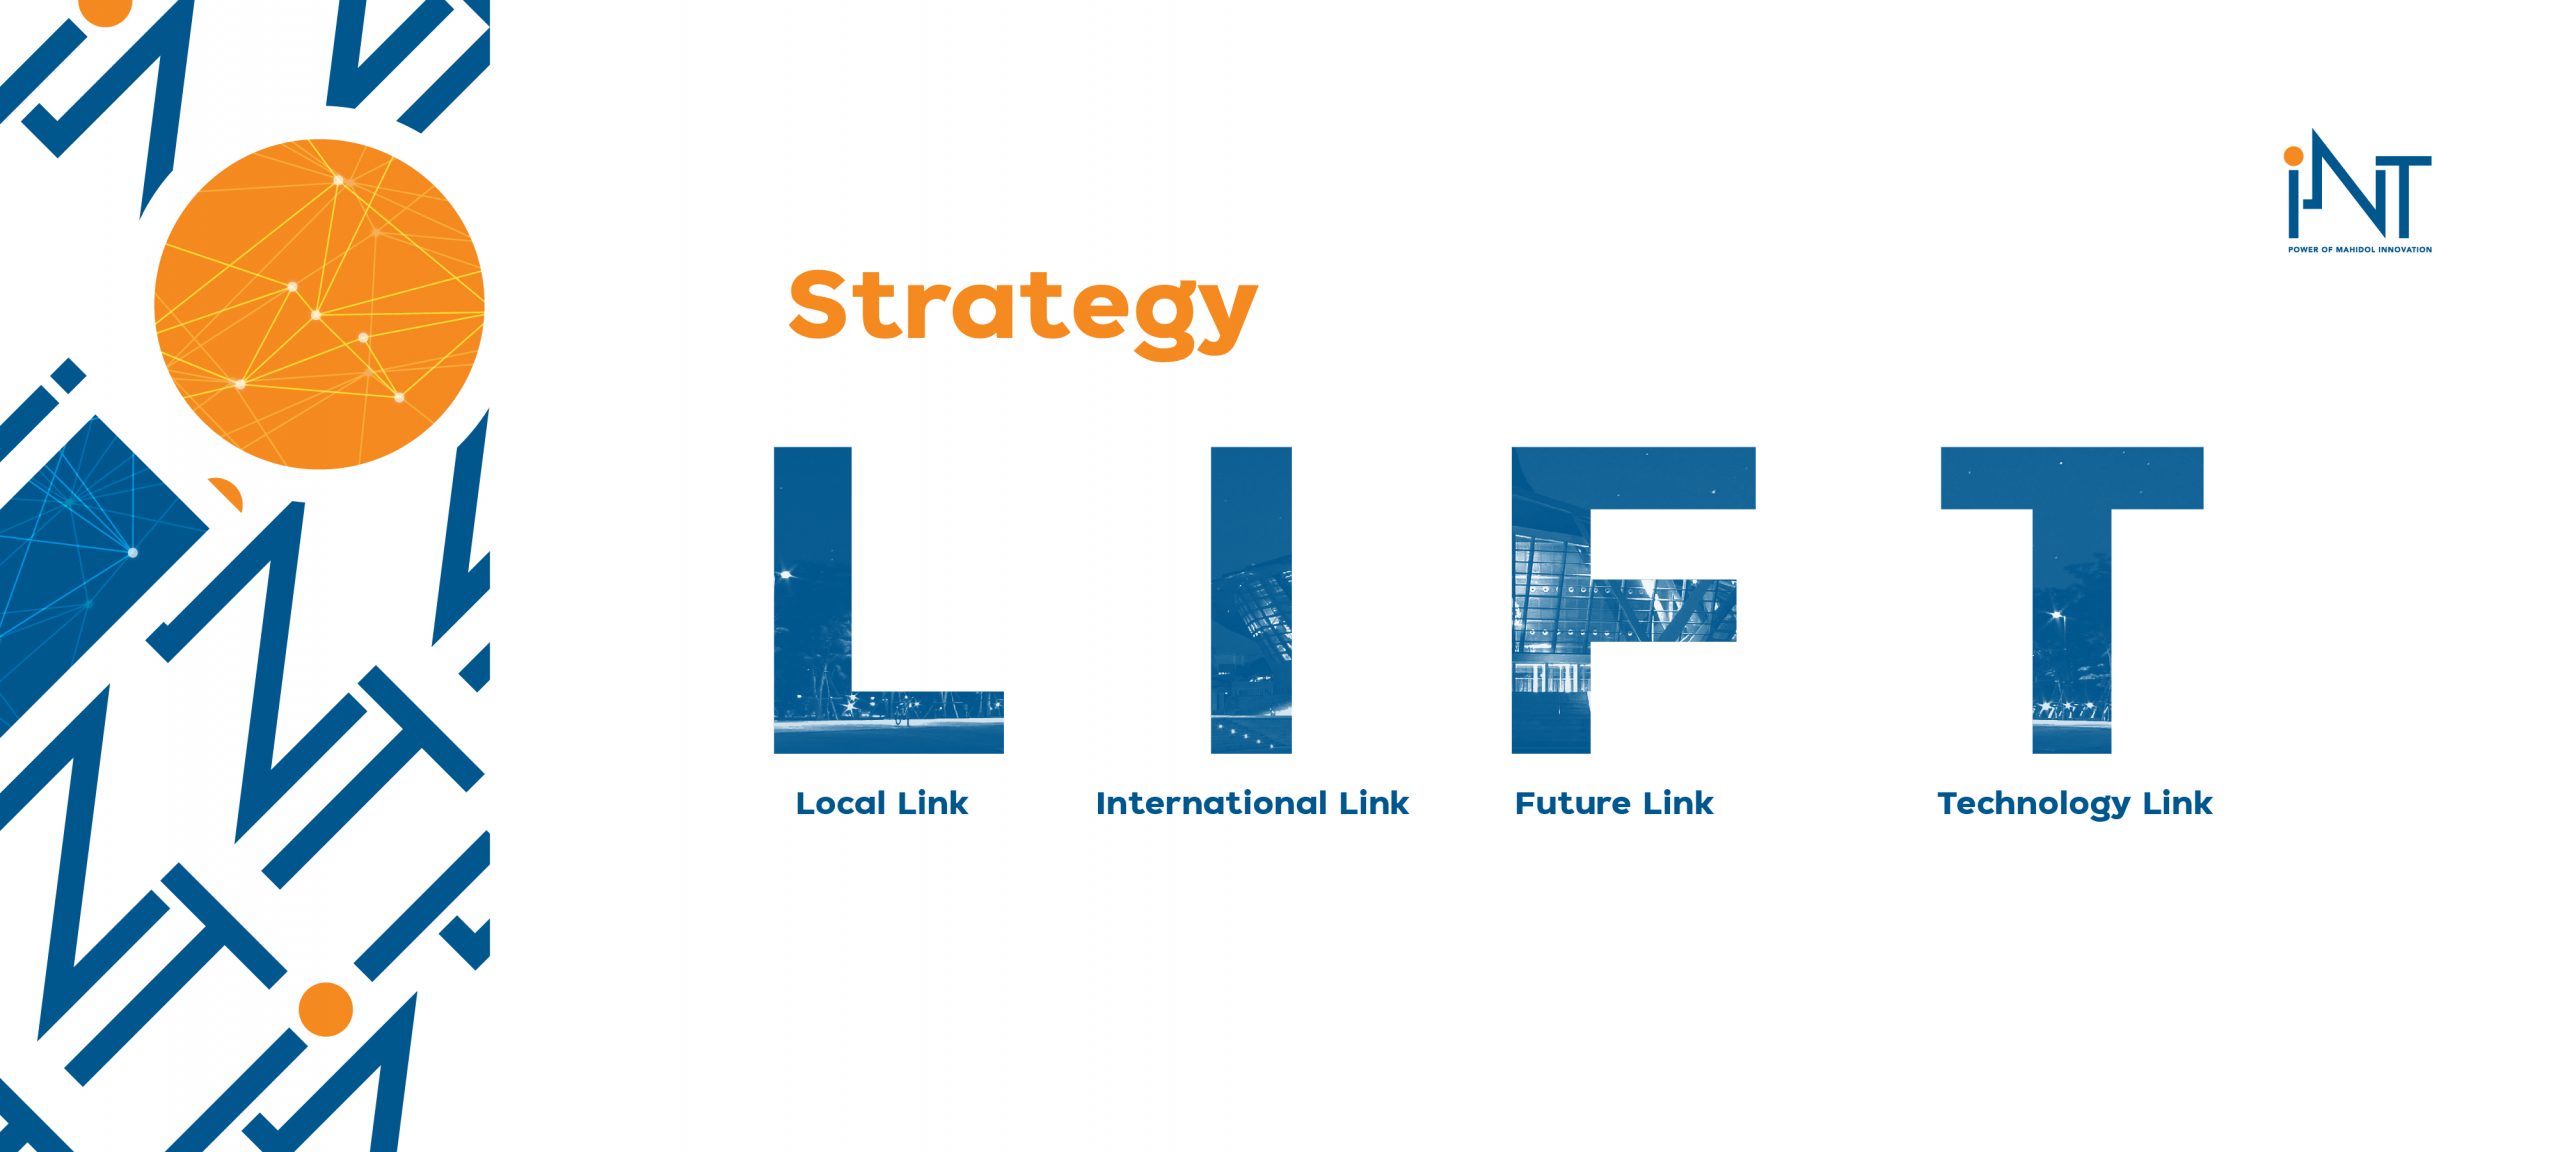 LIFT Strategy of iNT Mahidol